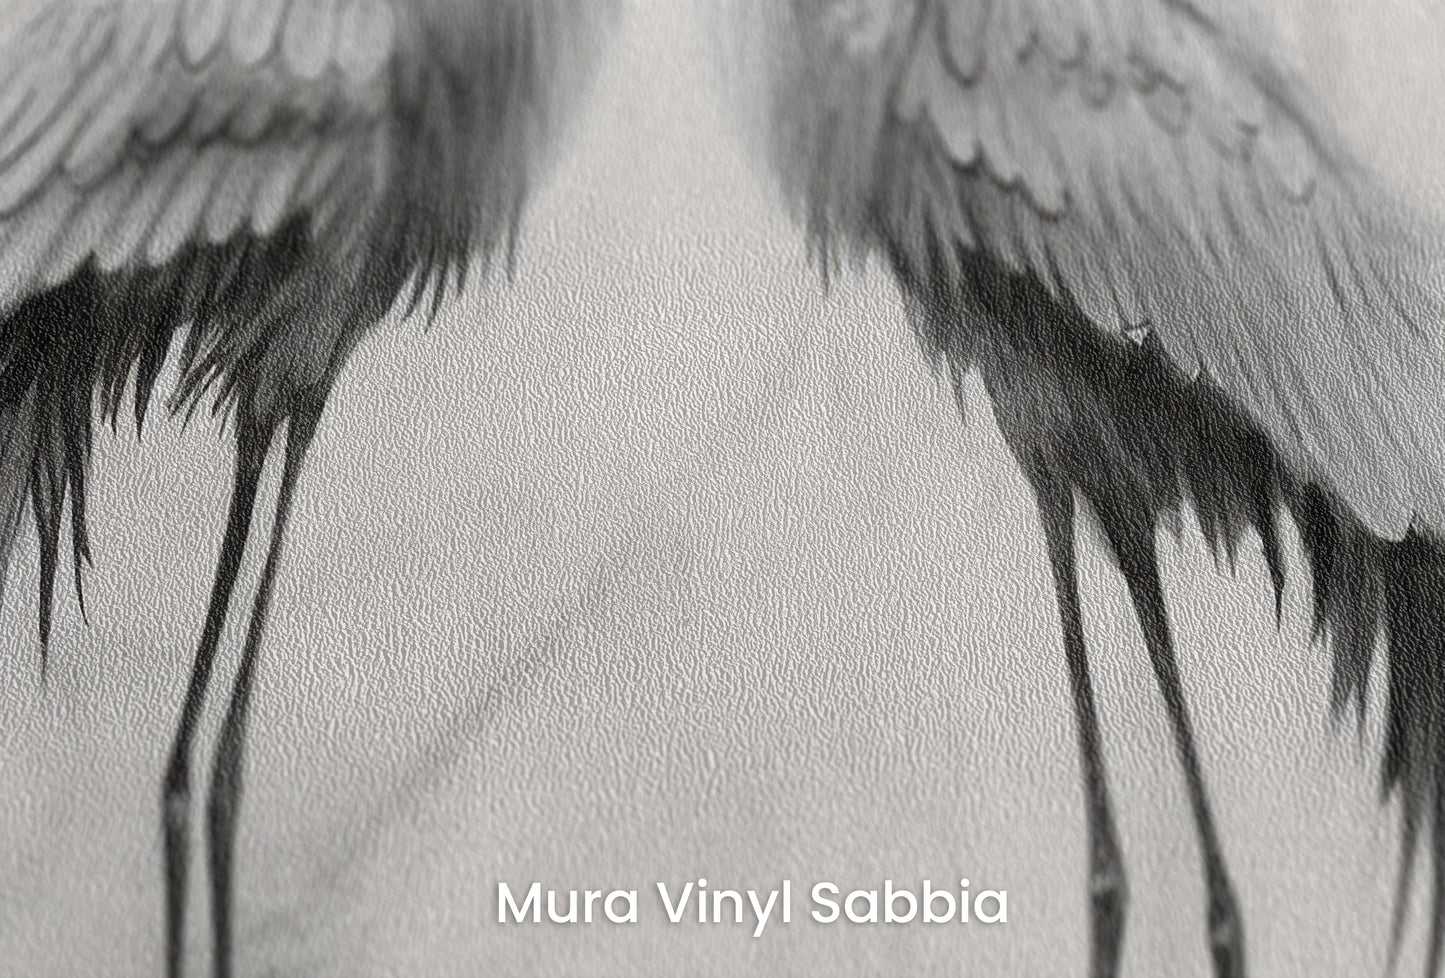 Zbliżenie na artystyczną fototapetę o nazwie Whispering Moon na podłożu Mura Vinyl Sabbia struktura grubego ziarna piasku.